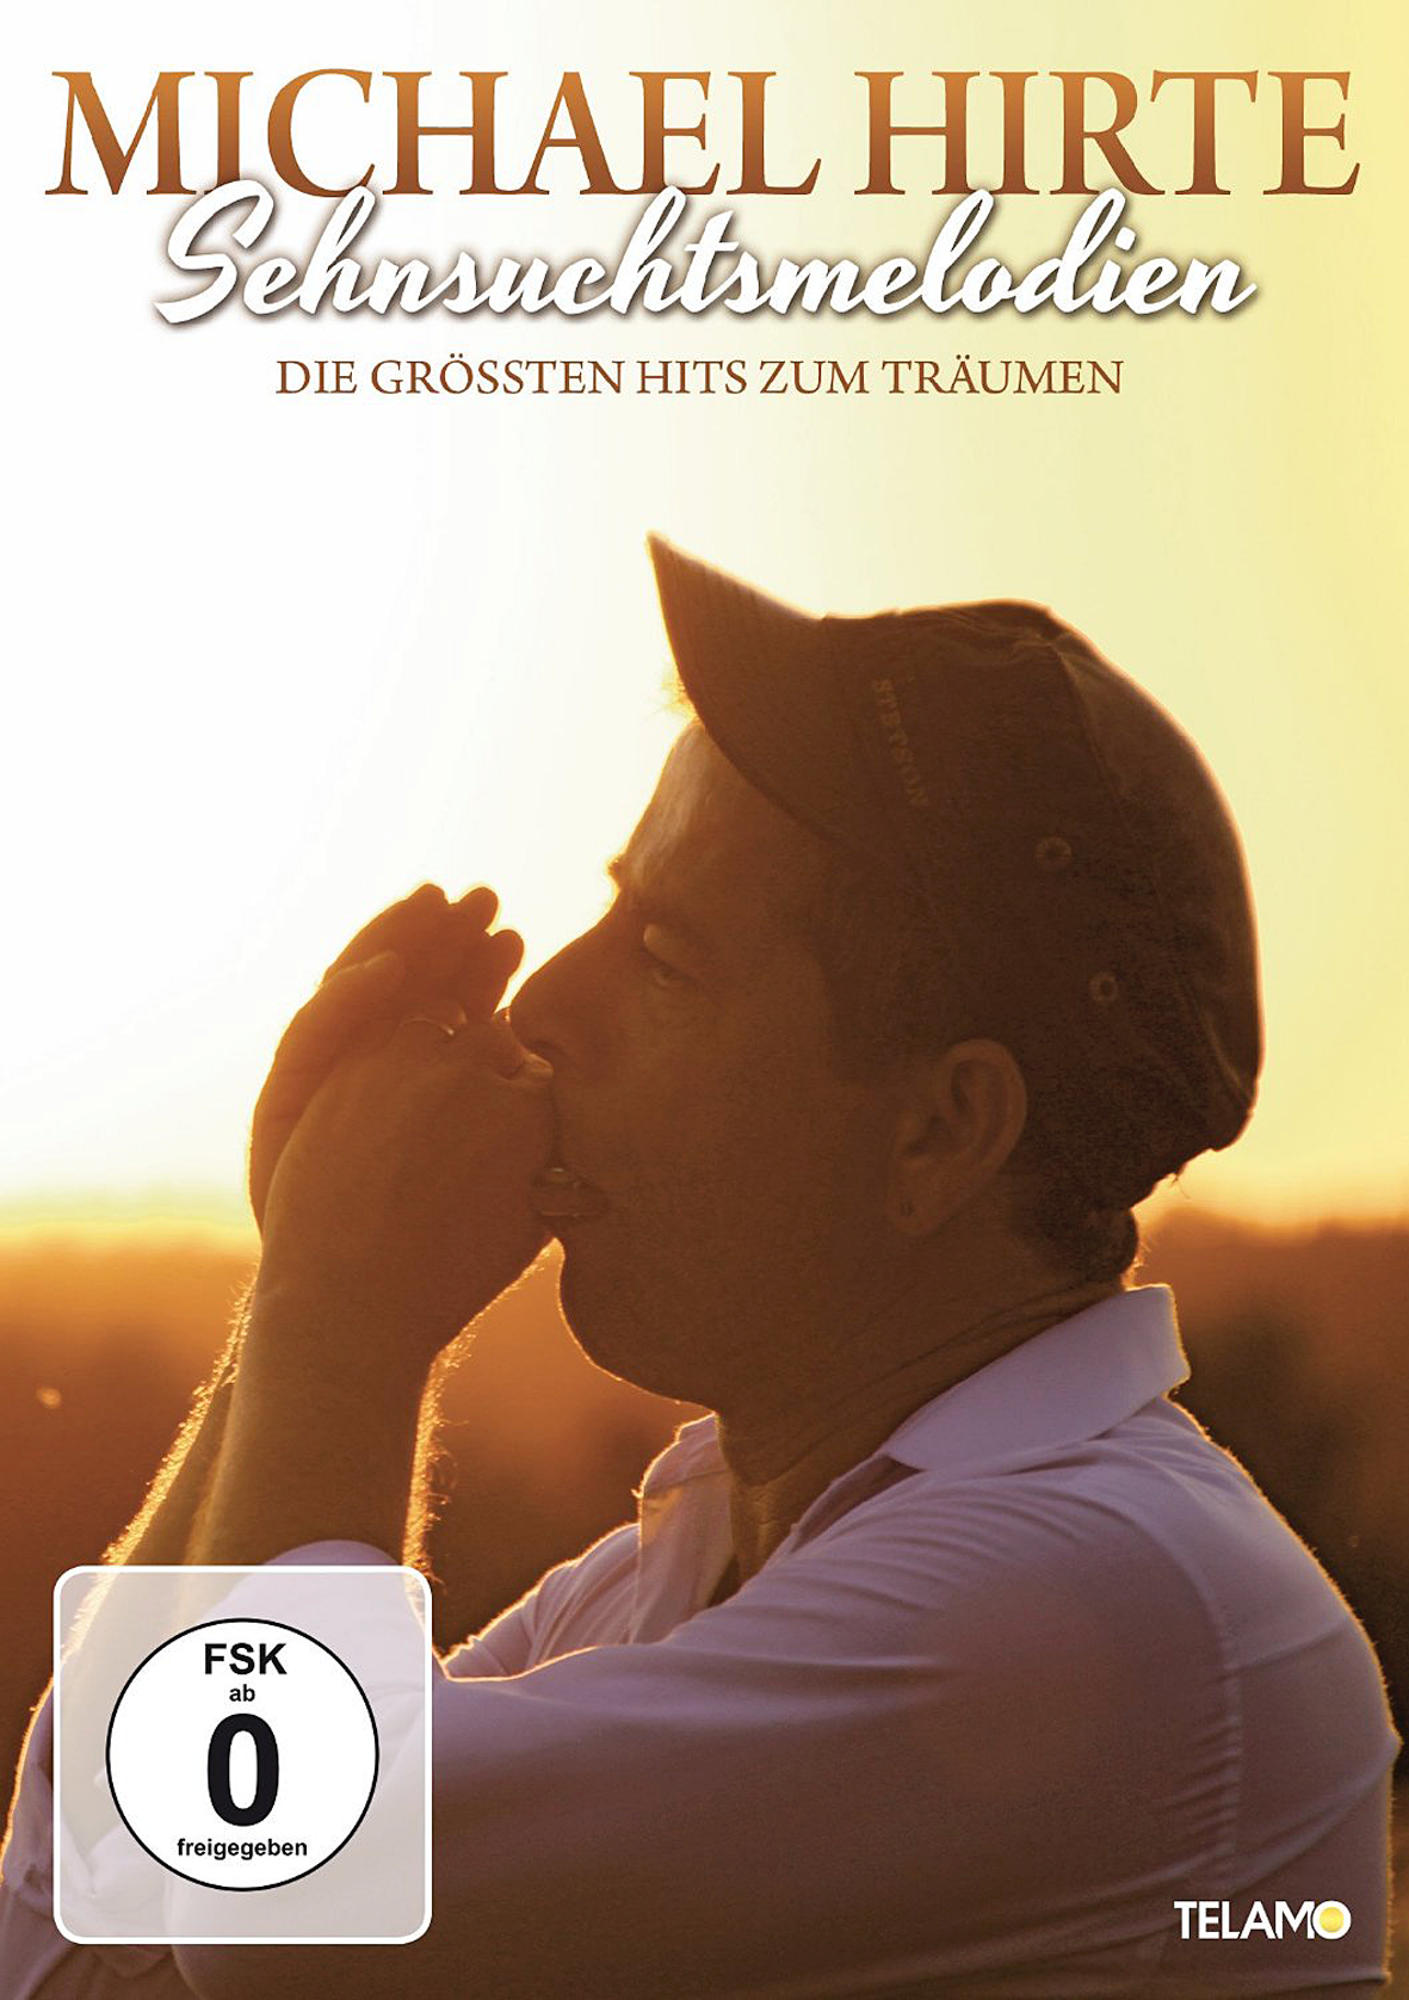 Michael Hirte - Größten Träumen - (DVD) Sehnsuchtsmelodien-Die Zum Hits